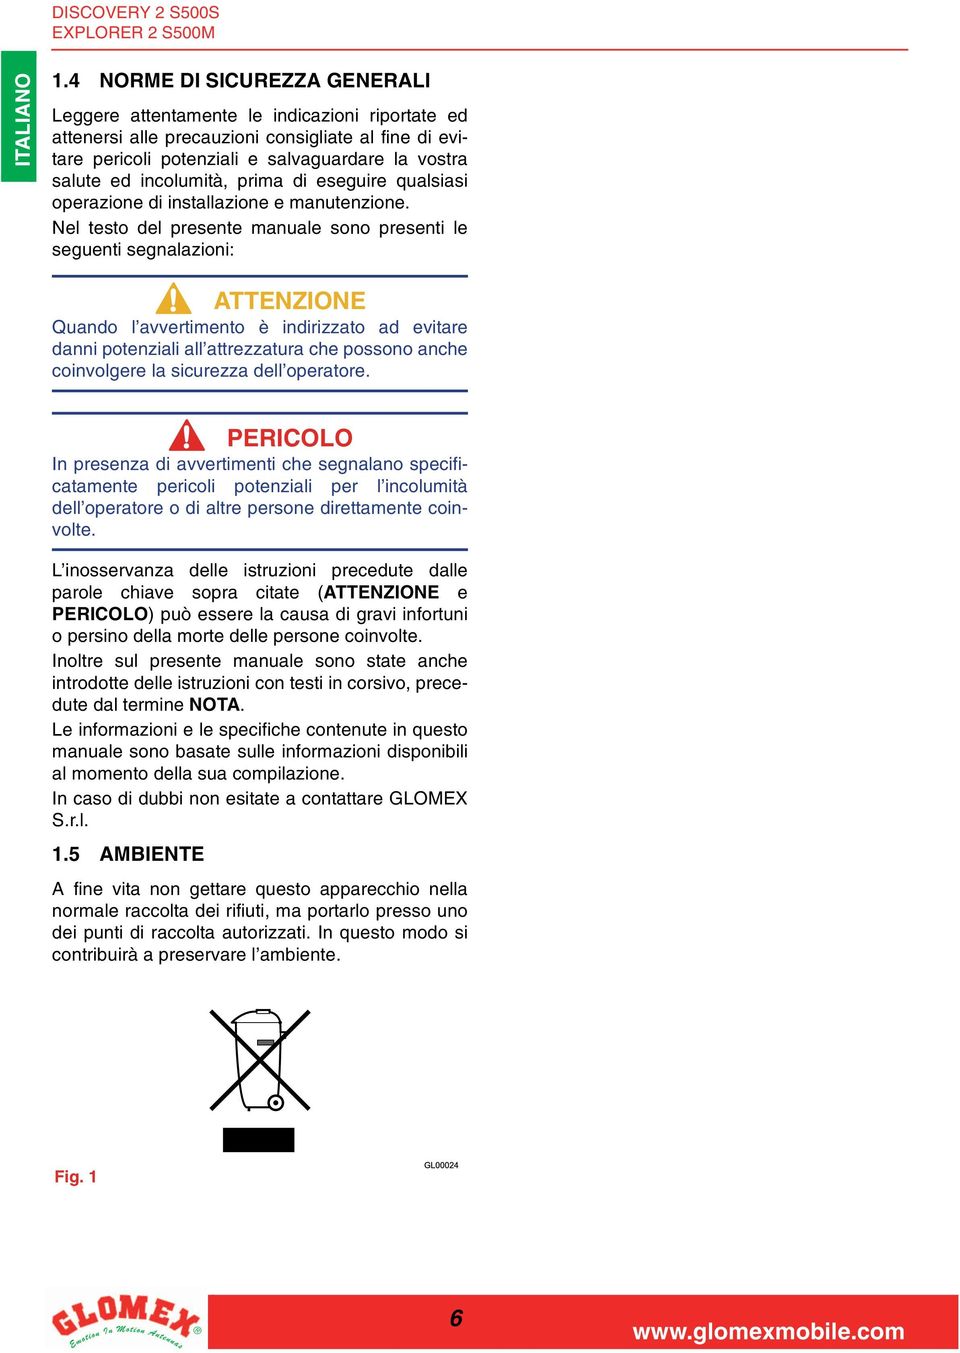 Nel testo del presente manuale sono presenti le seguenti segnalazioni: Quando l avvertimento è indirizzato ad evitare danni potenziali all attrezzatura che possono anche coinvolgere la sicurezza dell